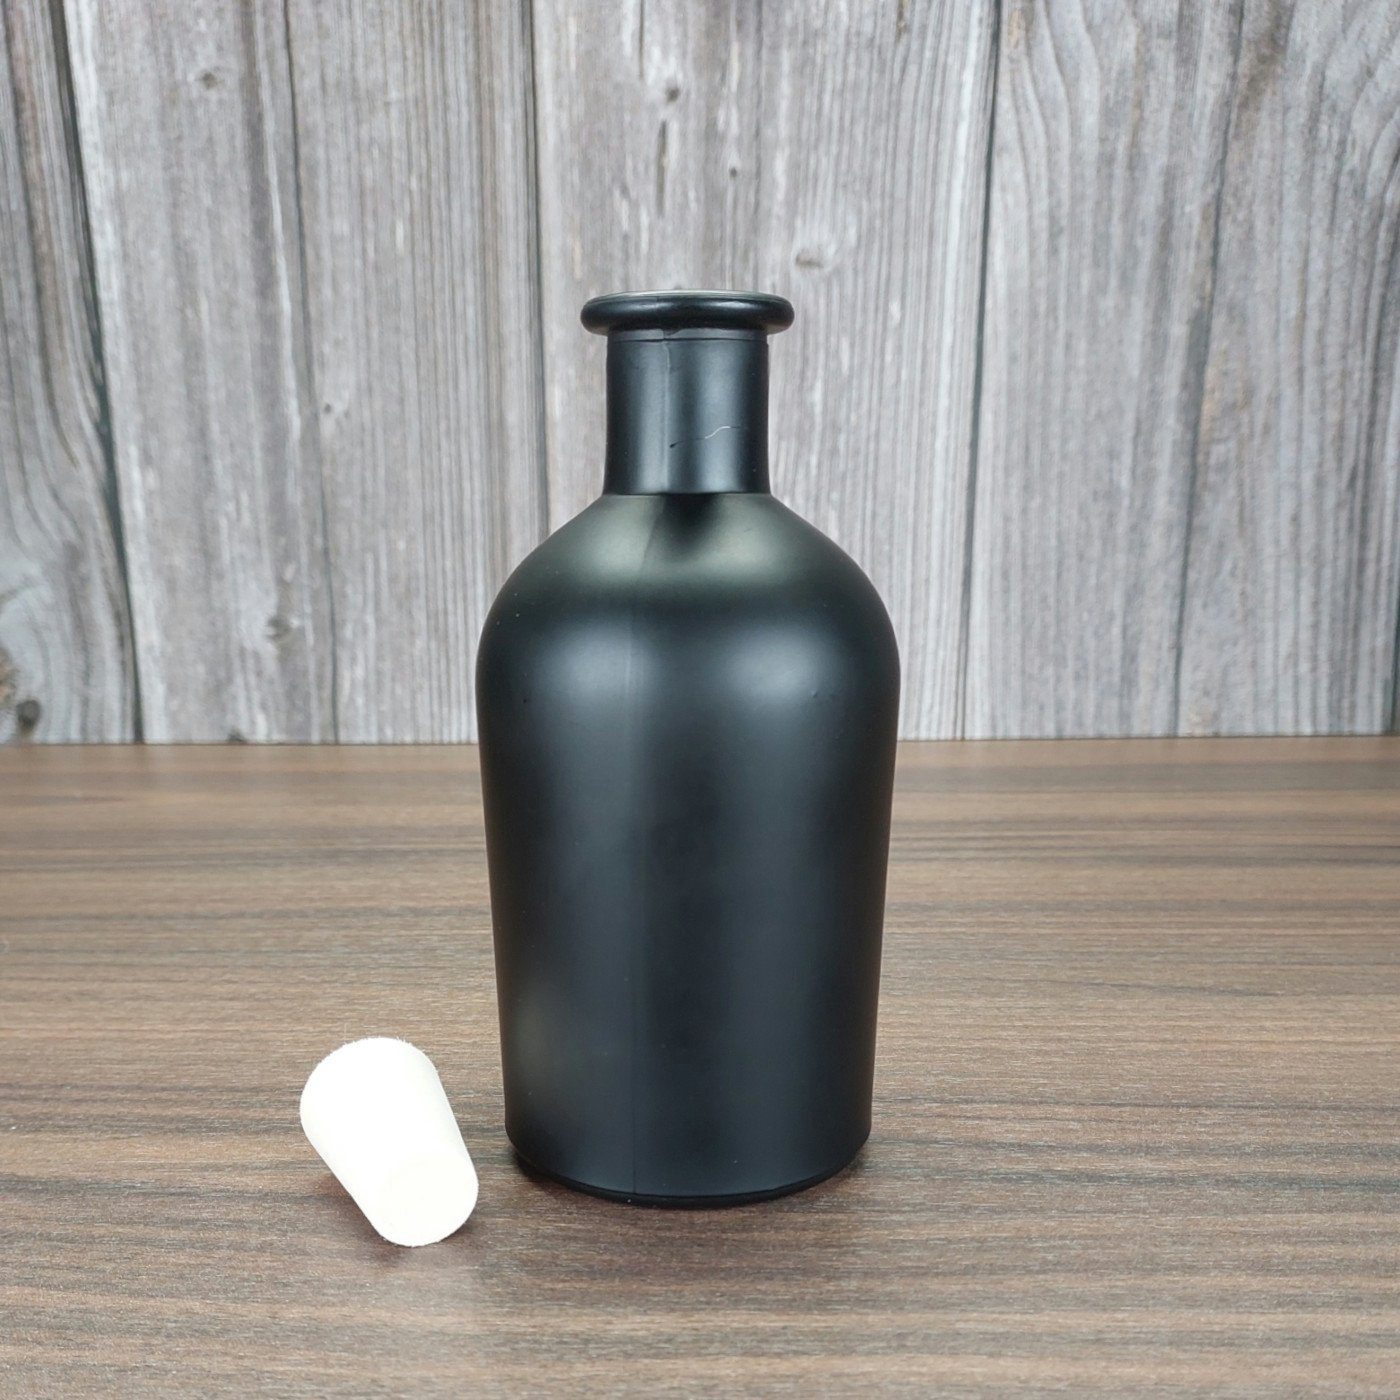 PEK Trinkflasche Set, mit Leere 12er Glasflaschen gouveo Apotheker 250 Schwarz, ml 0,25 Likörflasche Korken - l,